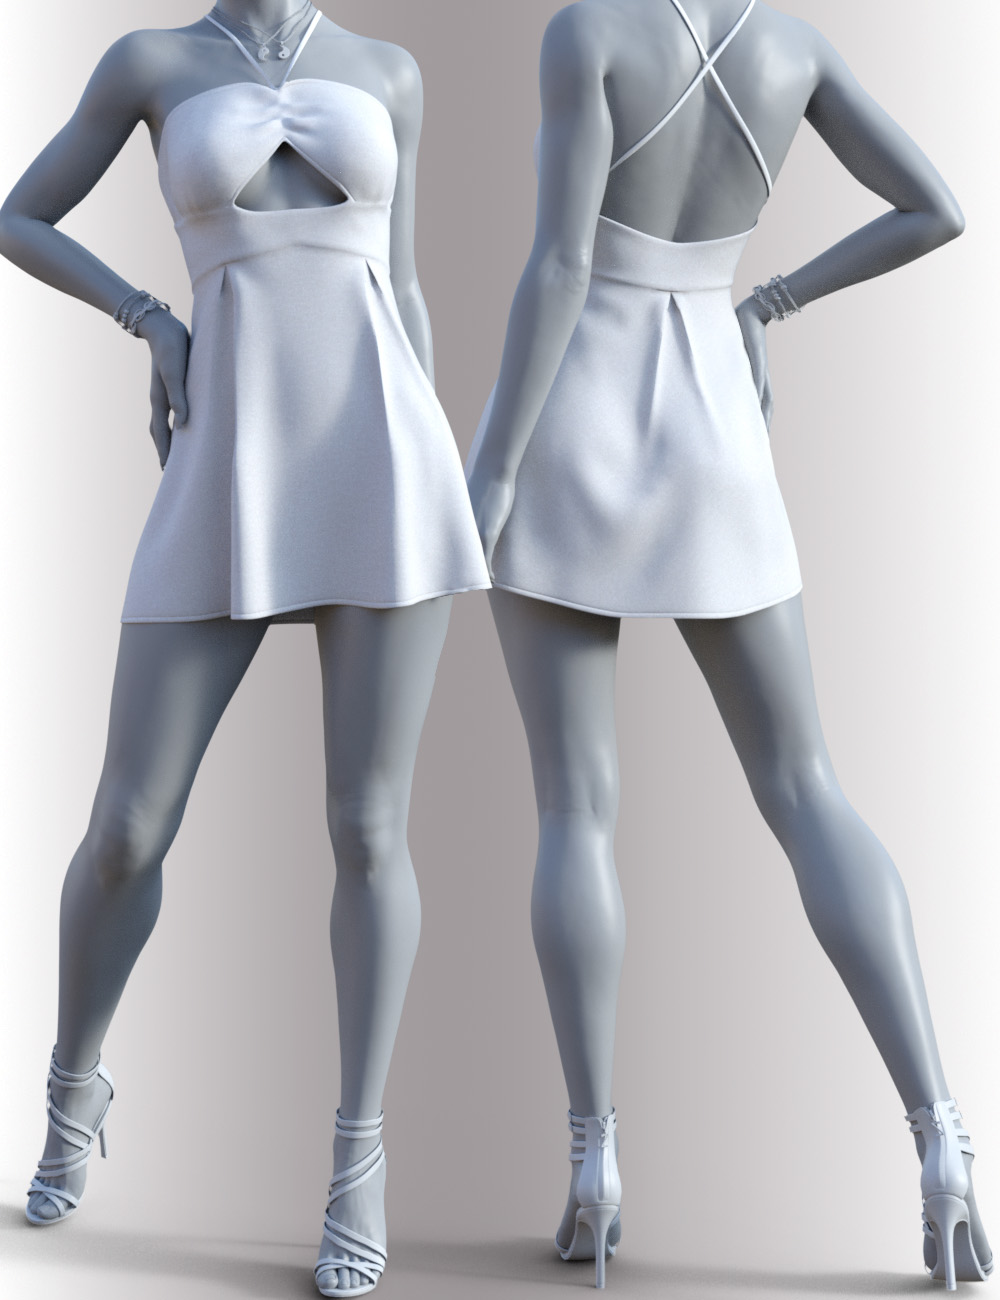 dForce Ryann Candy Outfit for Genesis 8 Female(s) by: OnnelArryn, 3D Models by Daz 3D